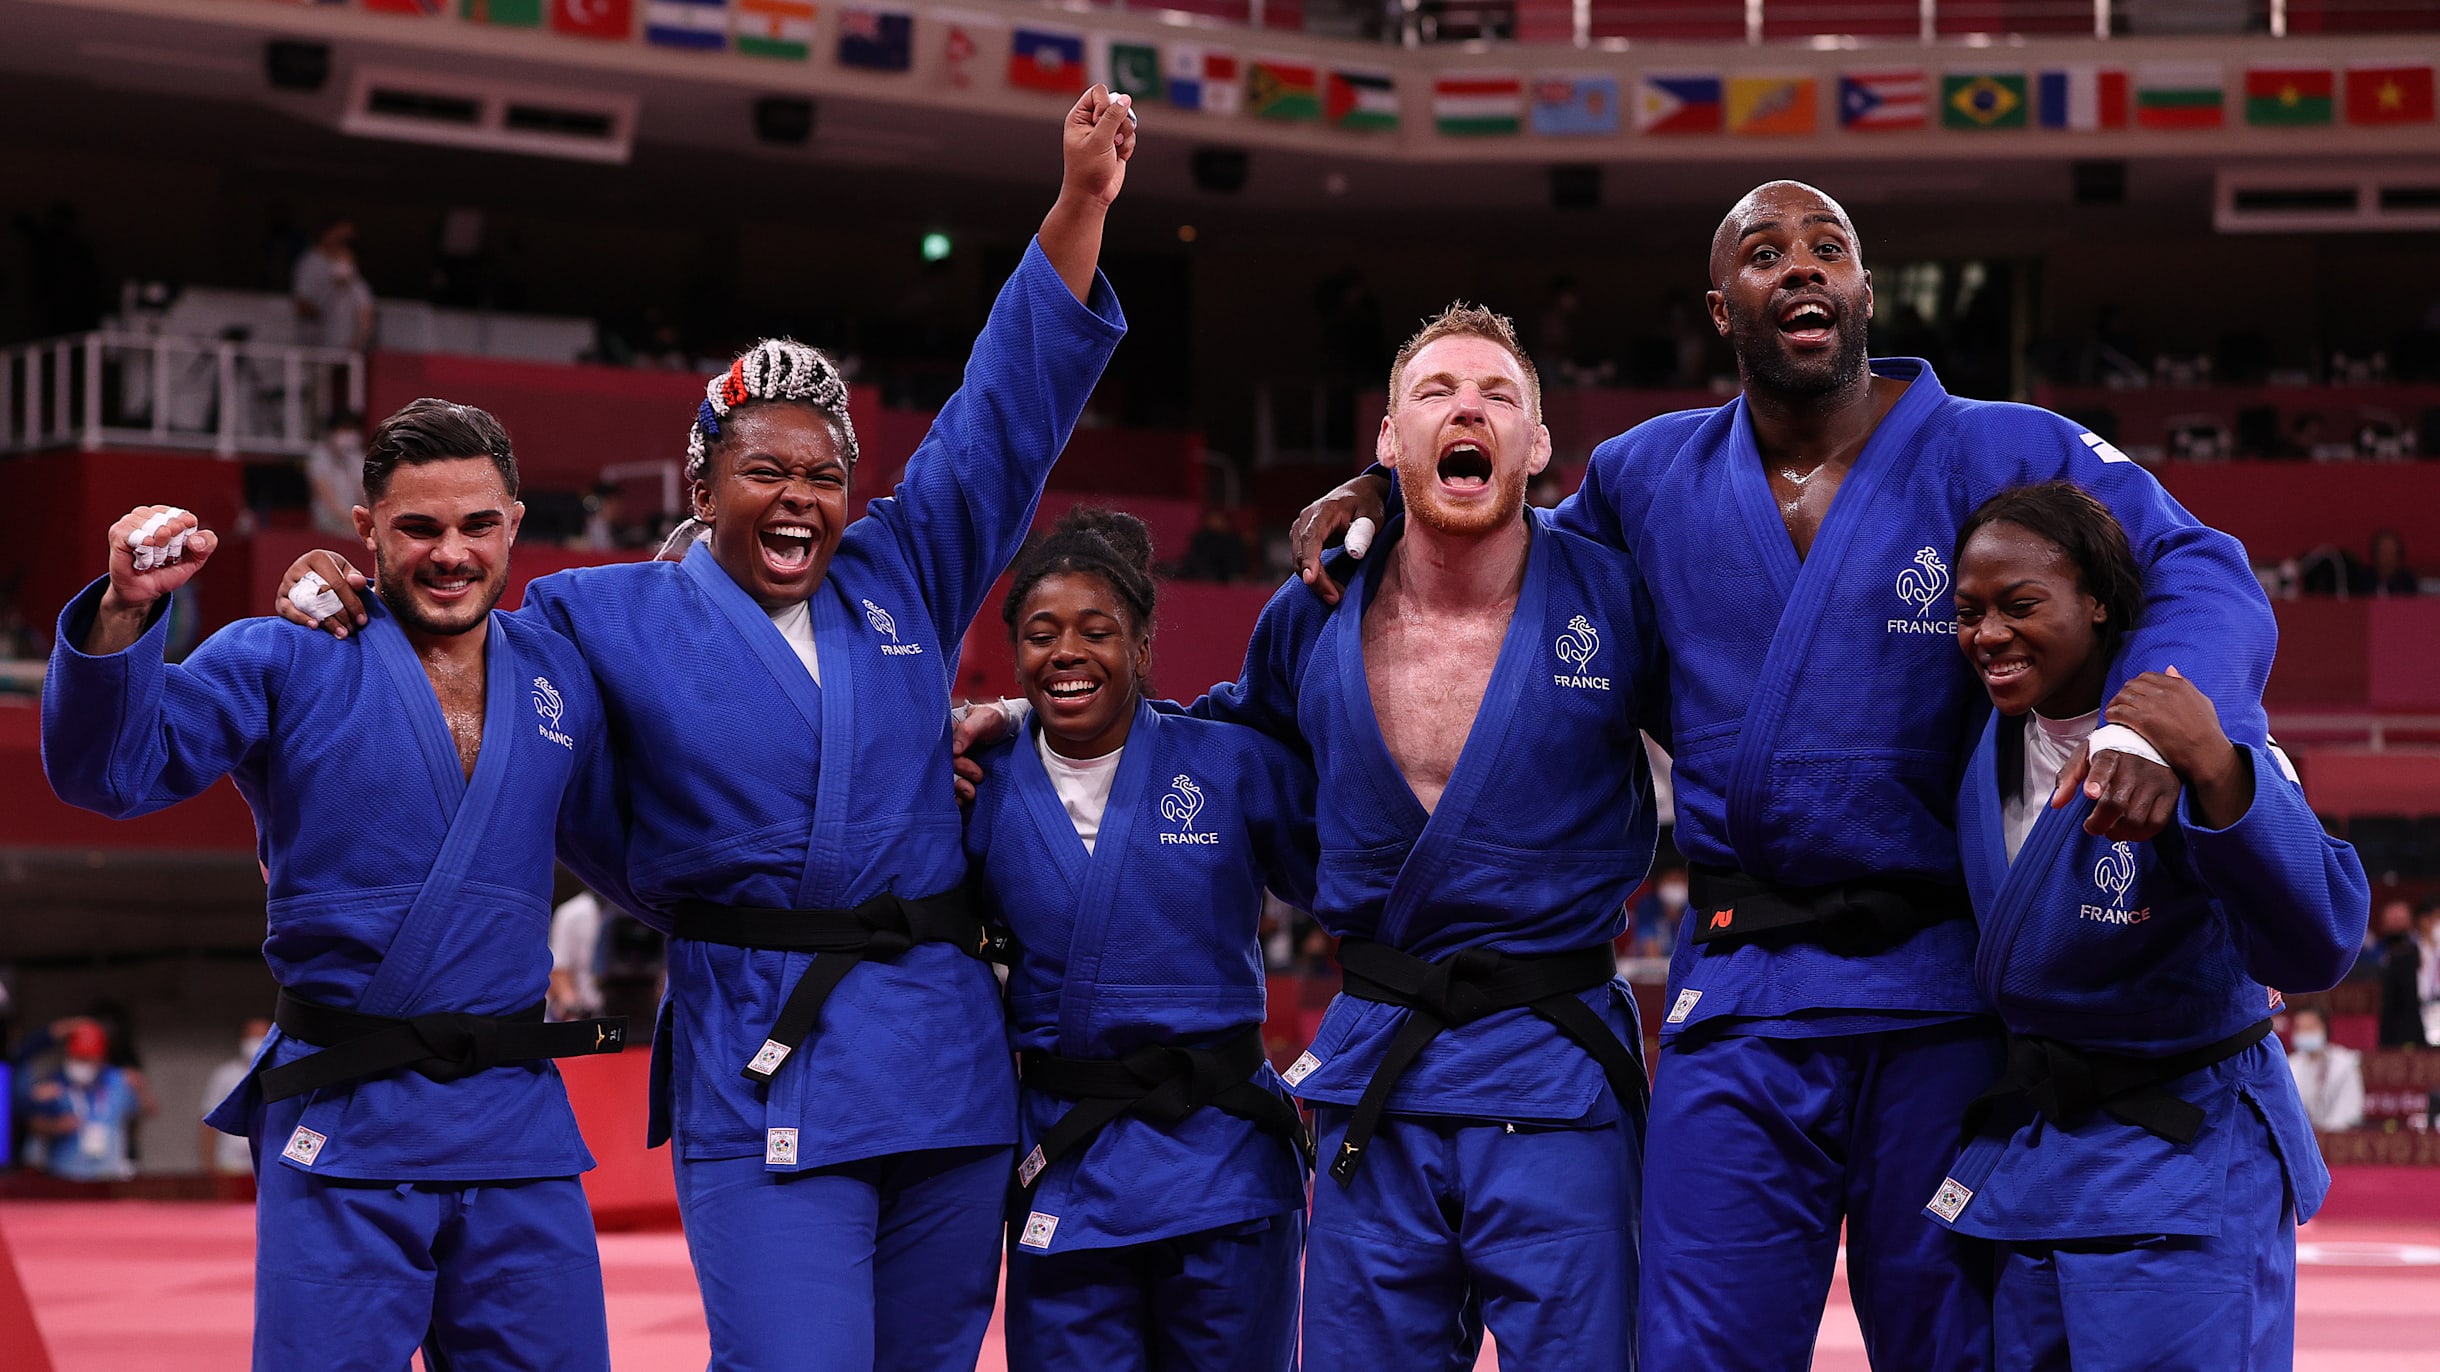 1/4 euro 2021 - Olimpíadas Paris 2024. Judo, França - Valor da